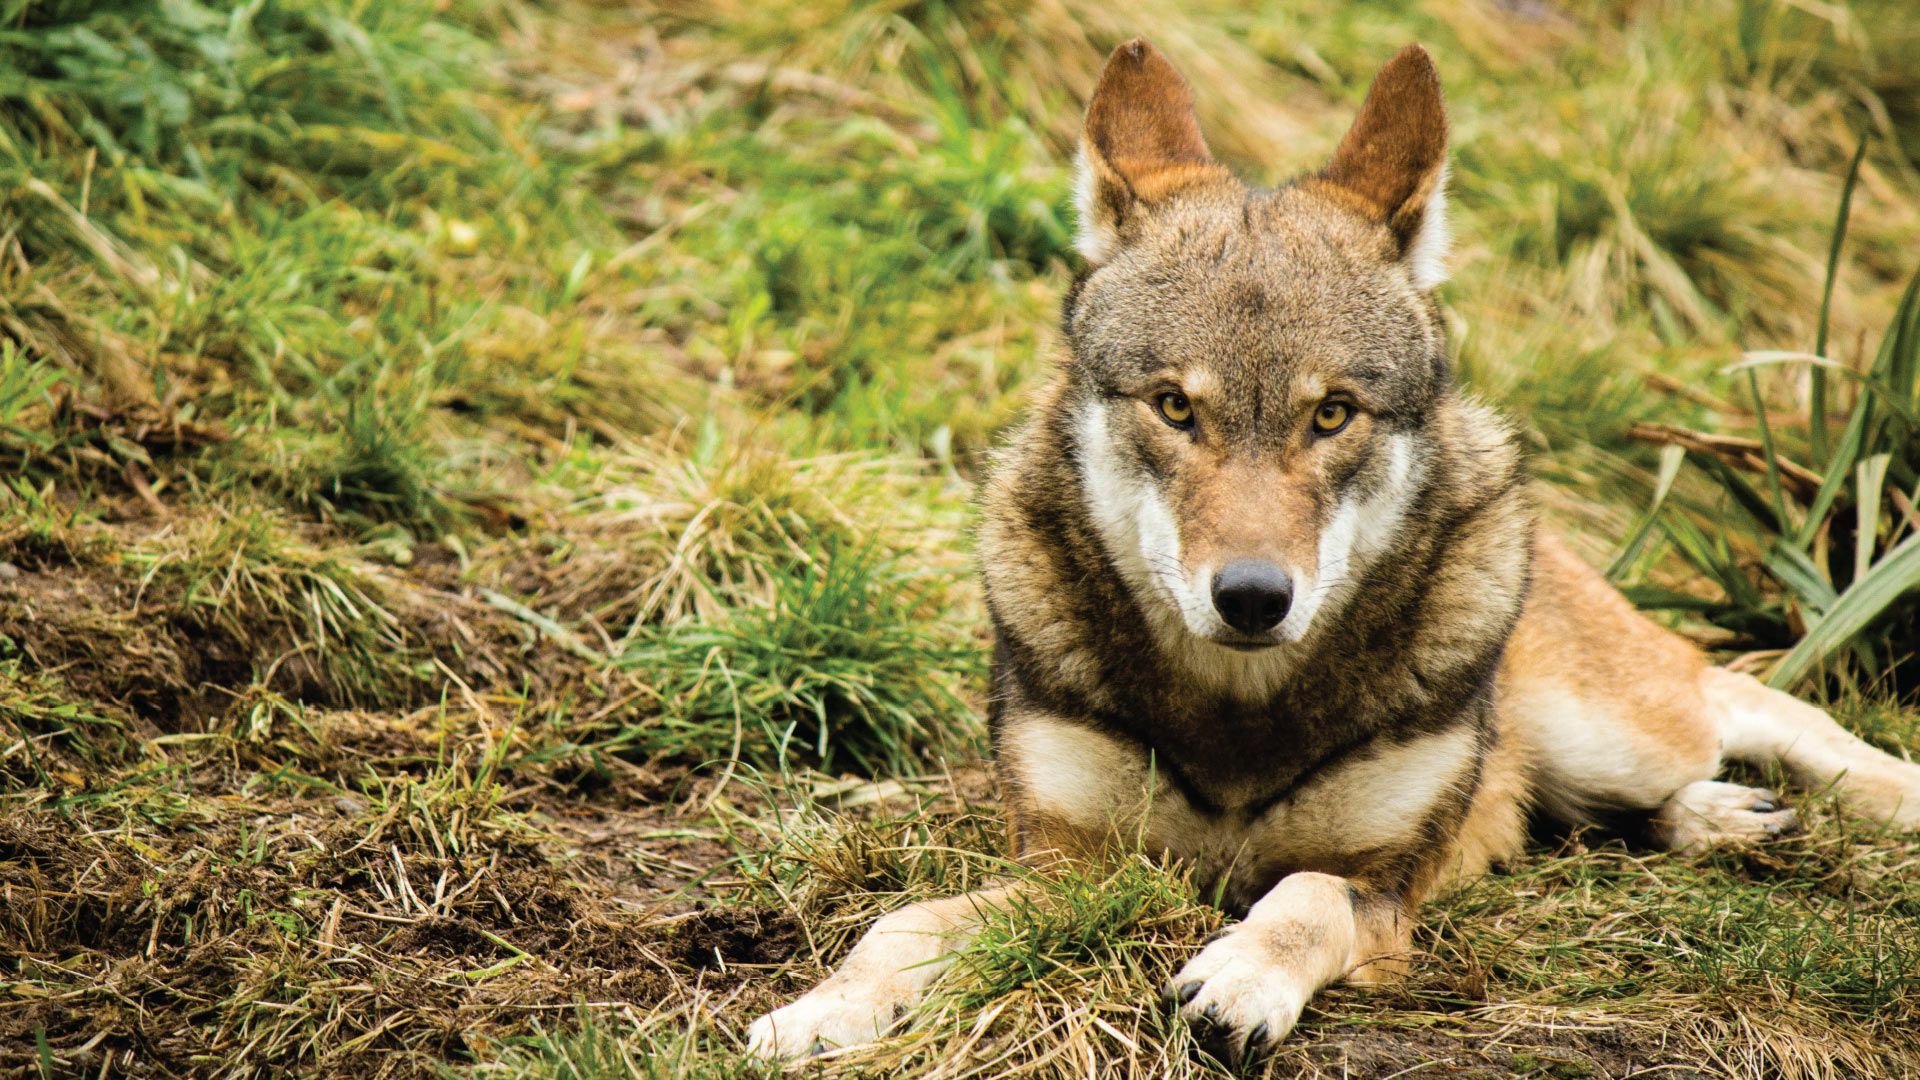 Lobos - características, hábitos e principais variações da espécie